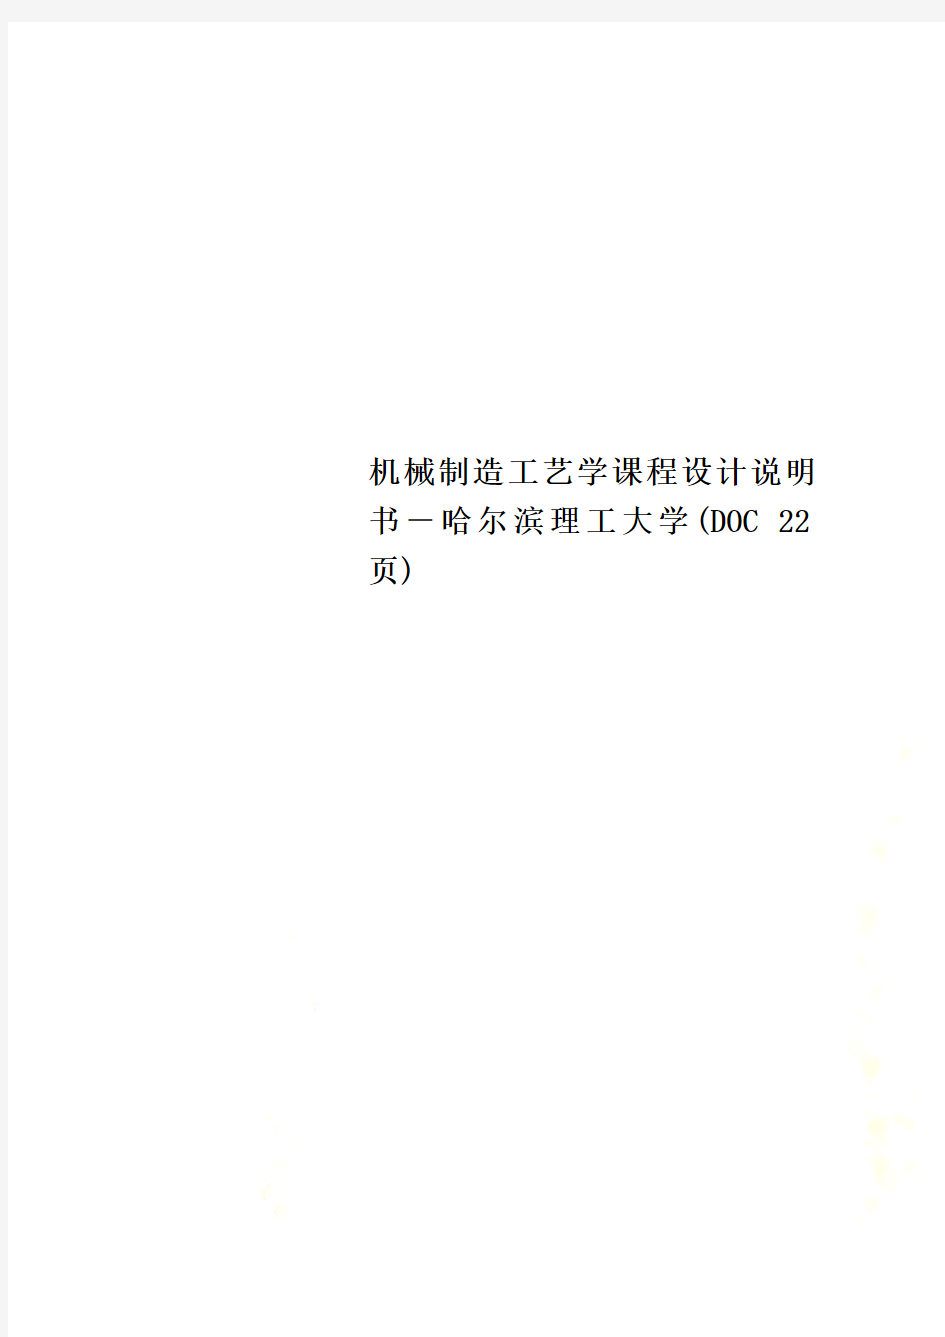 机械制造工艺学课程设计说明书-哈尔滨理工大学(DOC 22页)